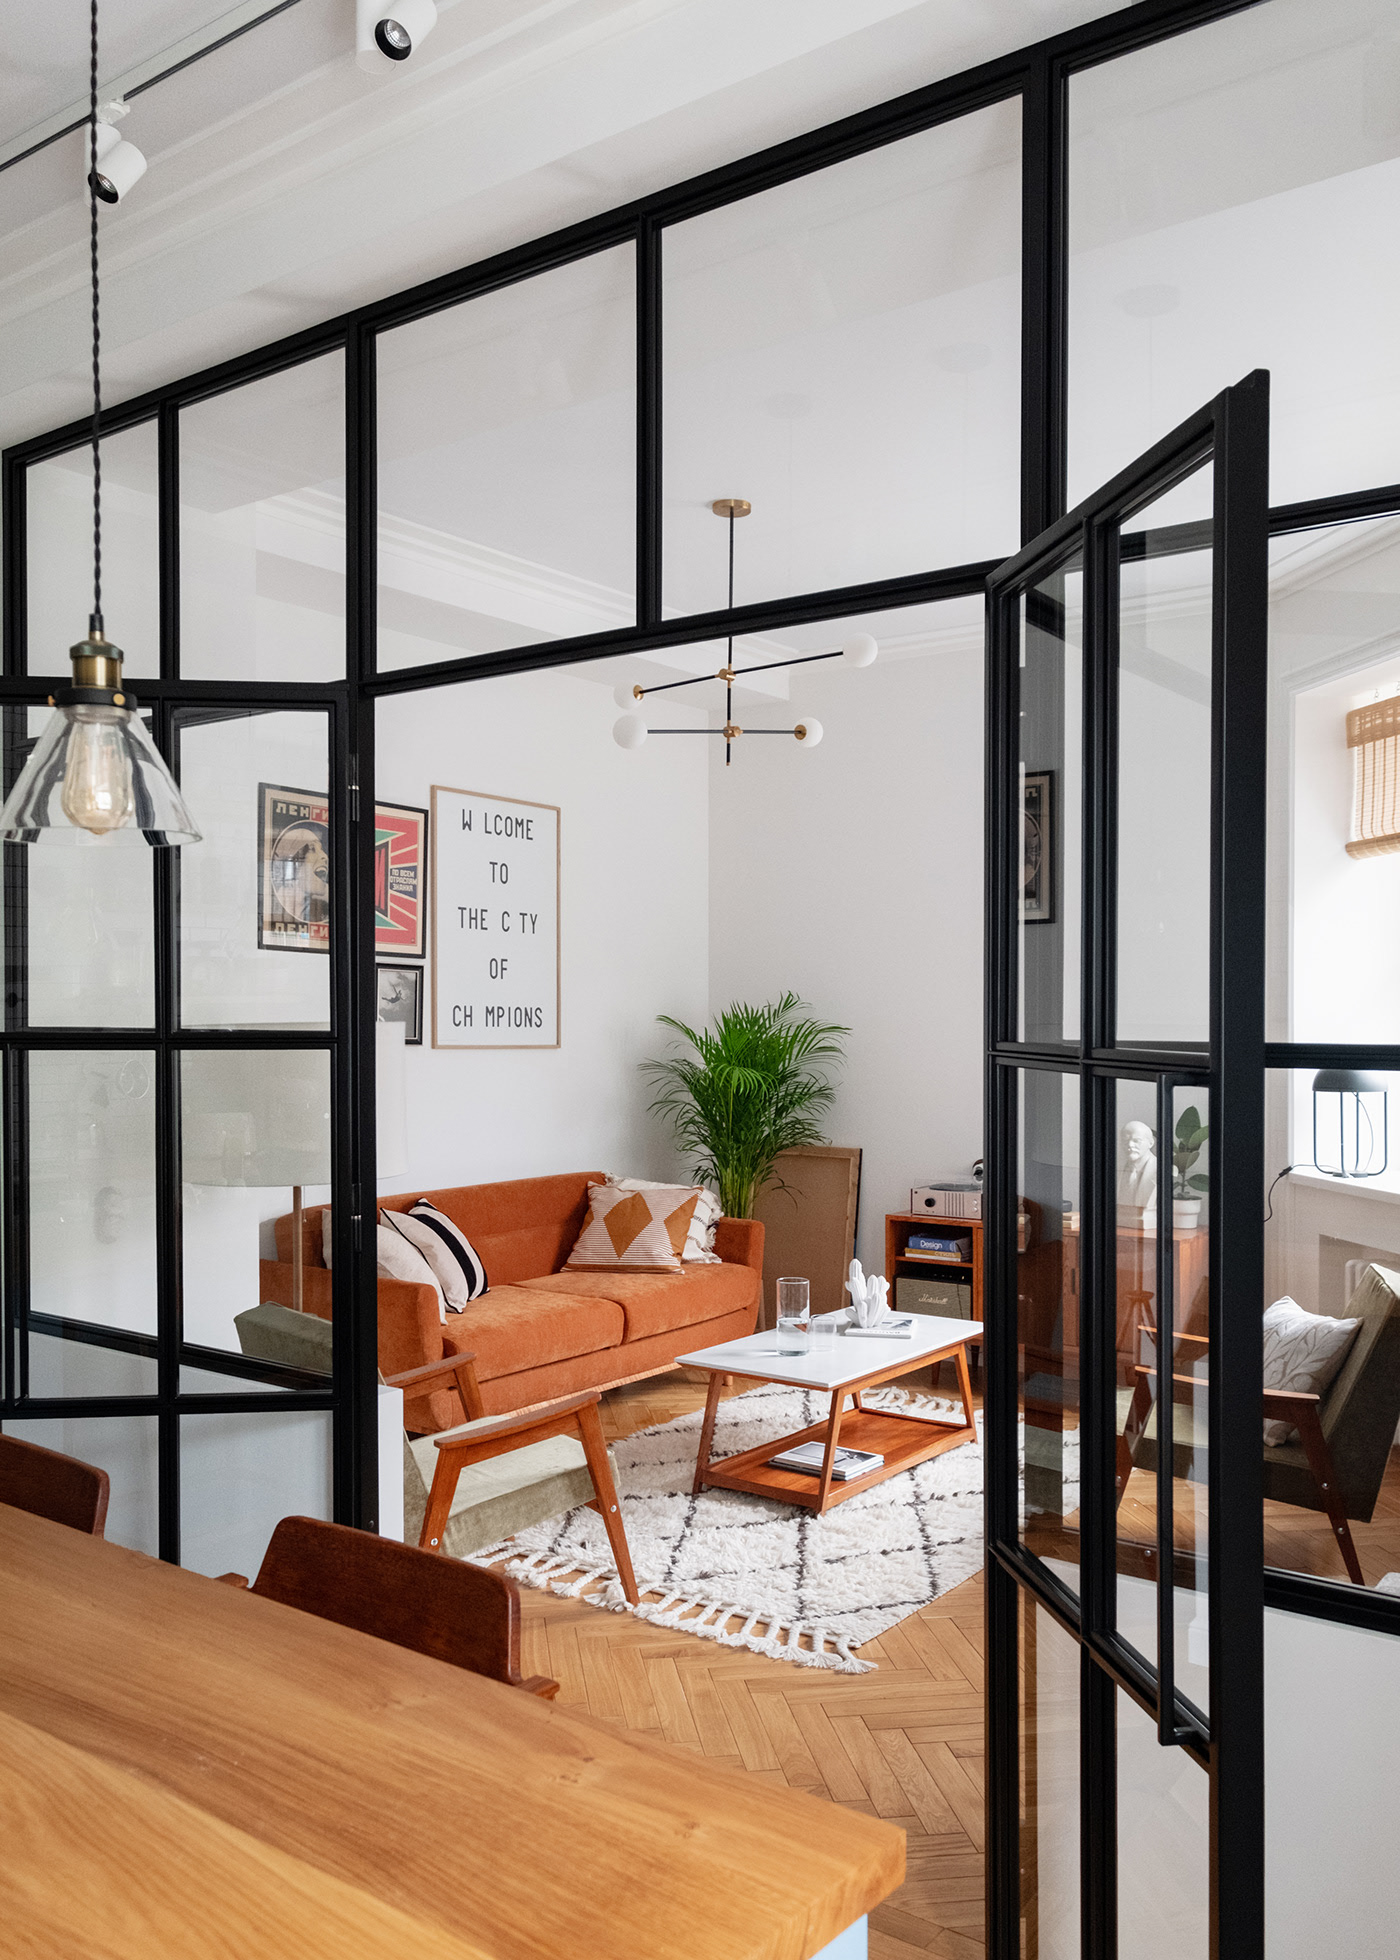 Bức tường kính trong suốt với viền khung màu đen giúp phân chia phòng khách và phòng bếp mà vẫn đảm bảo sự thông thoáng cũng như đón nhận ánh sáng tự nhiên.